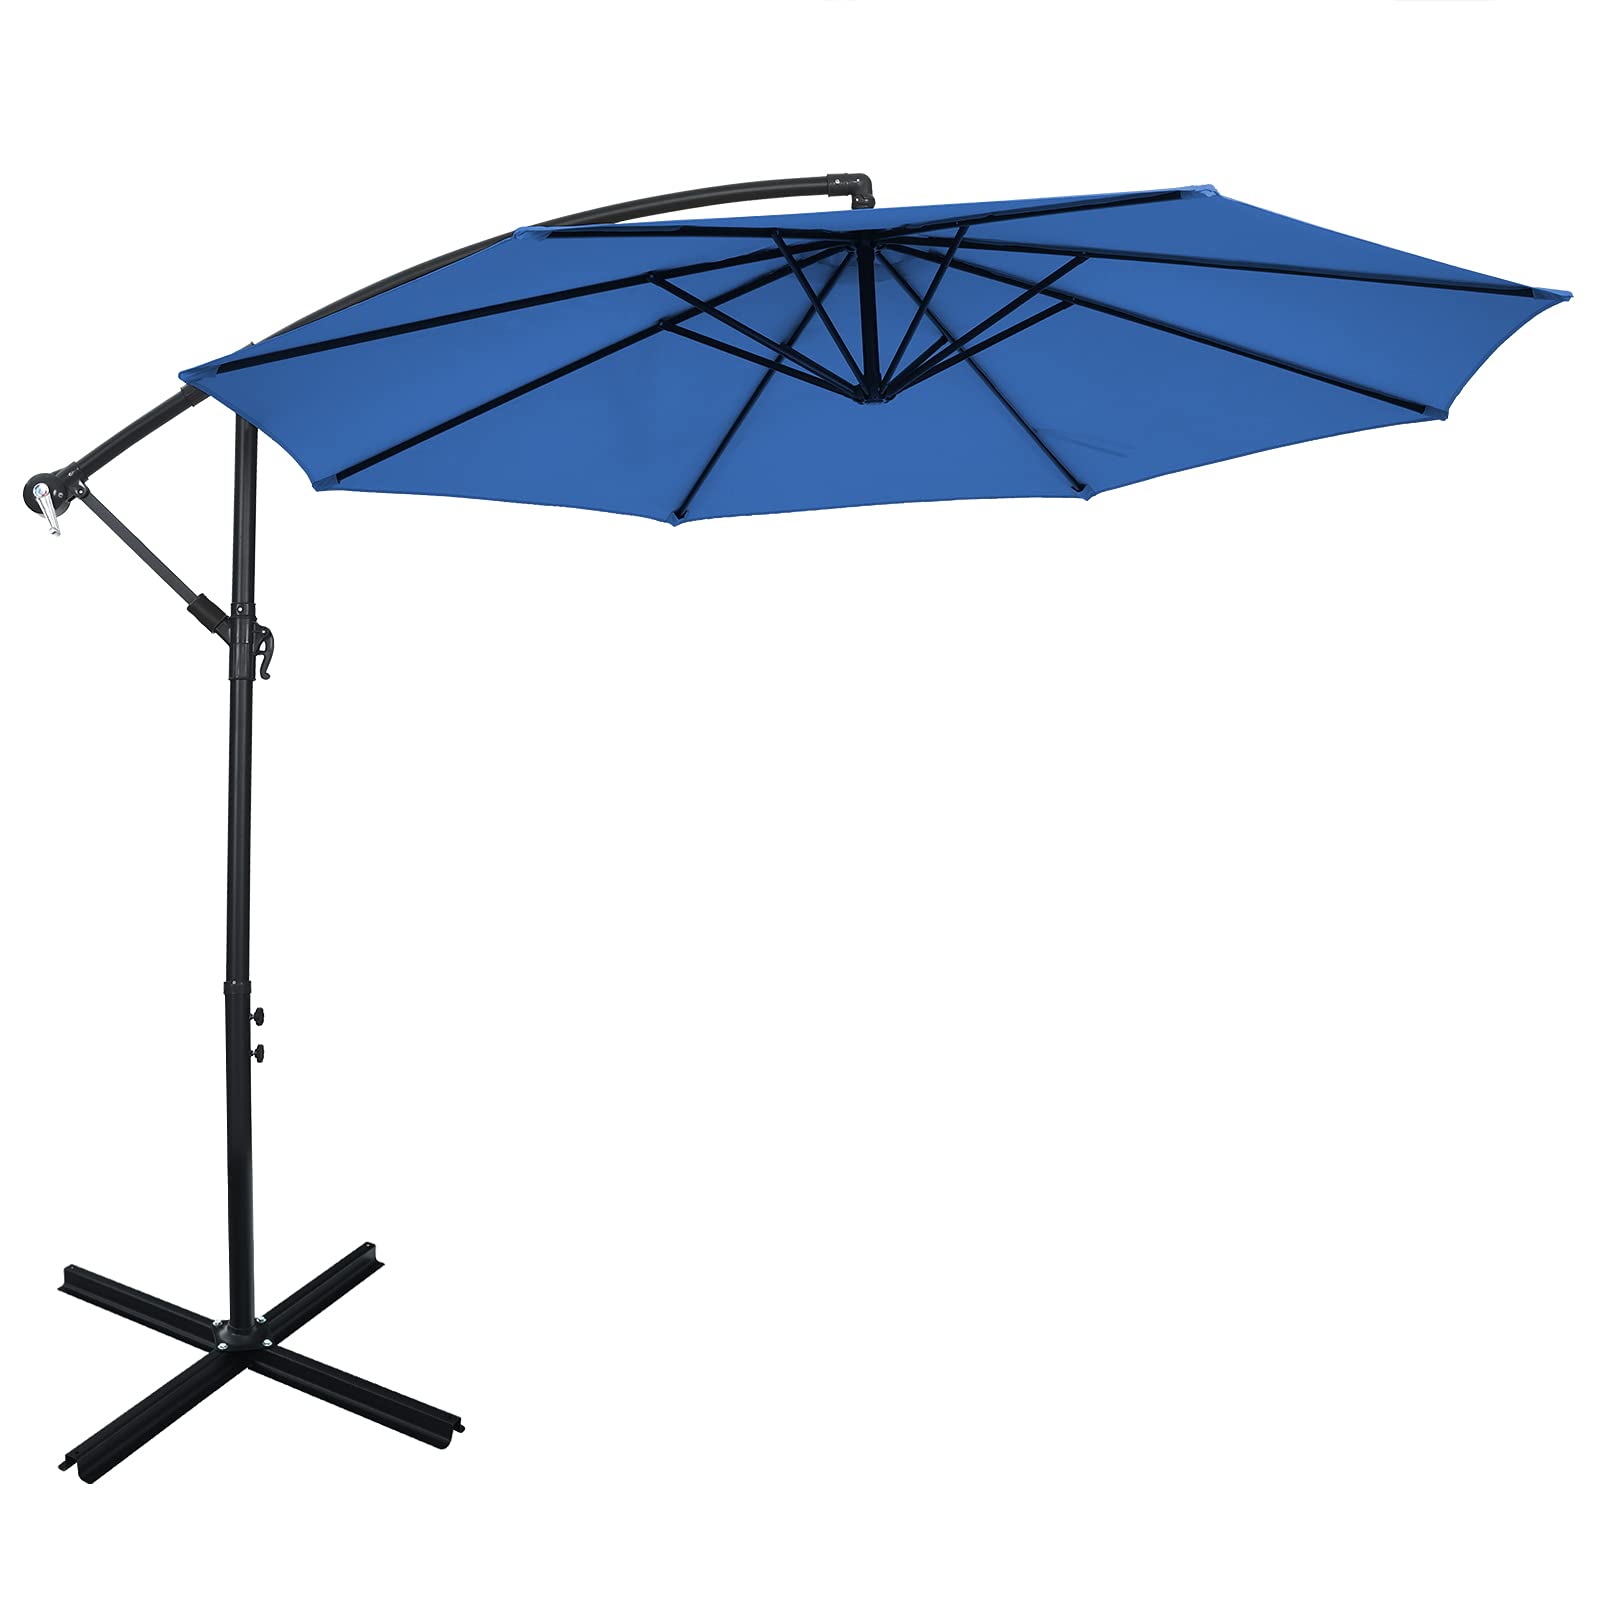 Giantex 10FT Patio Offset Umbrella, 8 Ribs Cantilever Umbrella Outdoor w/Crank, Cross Base